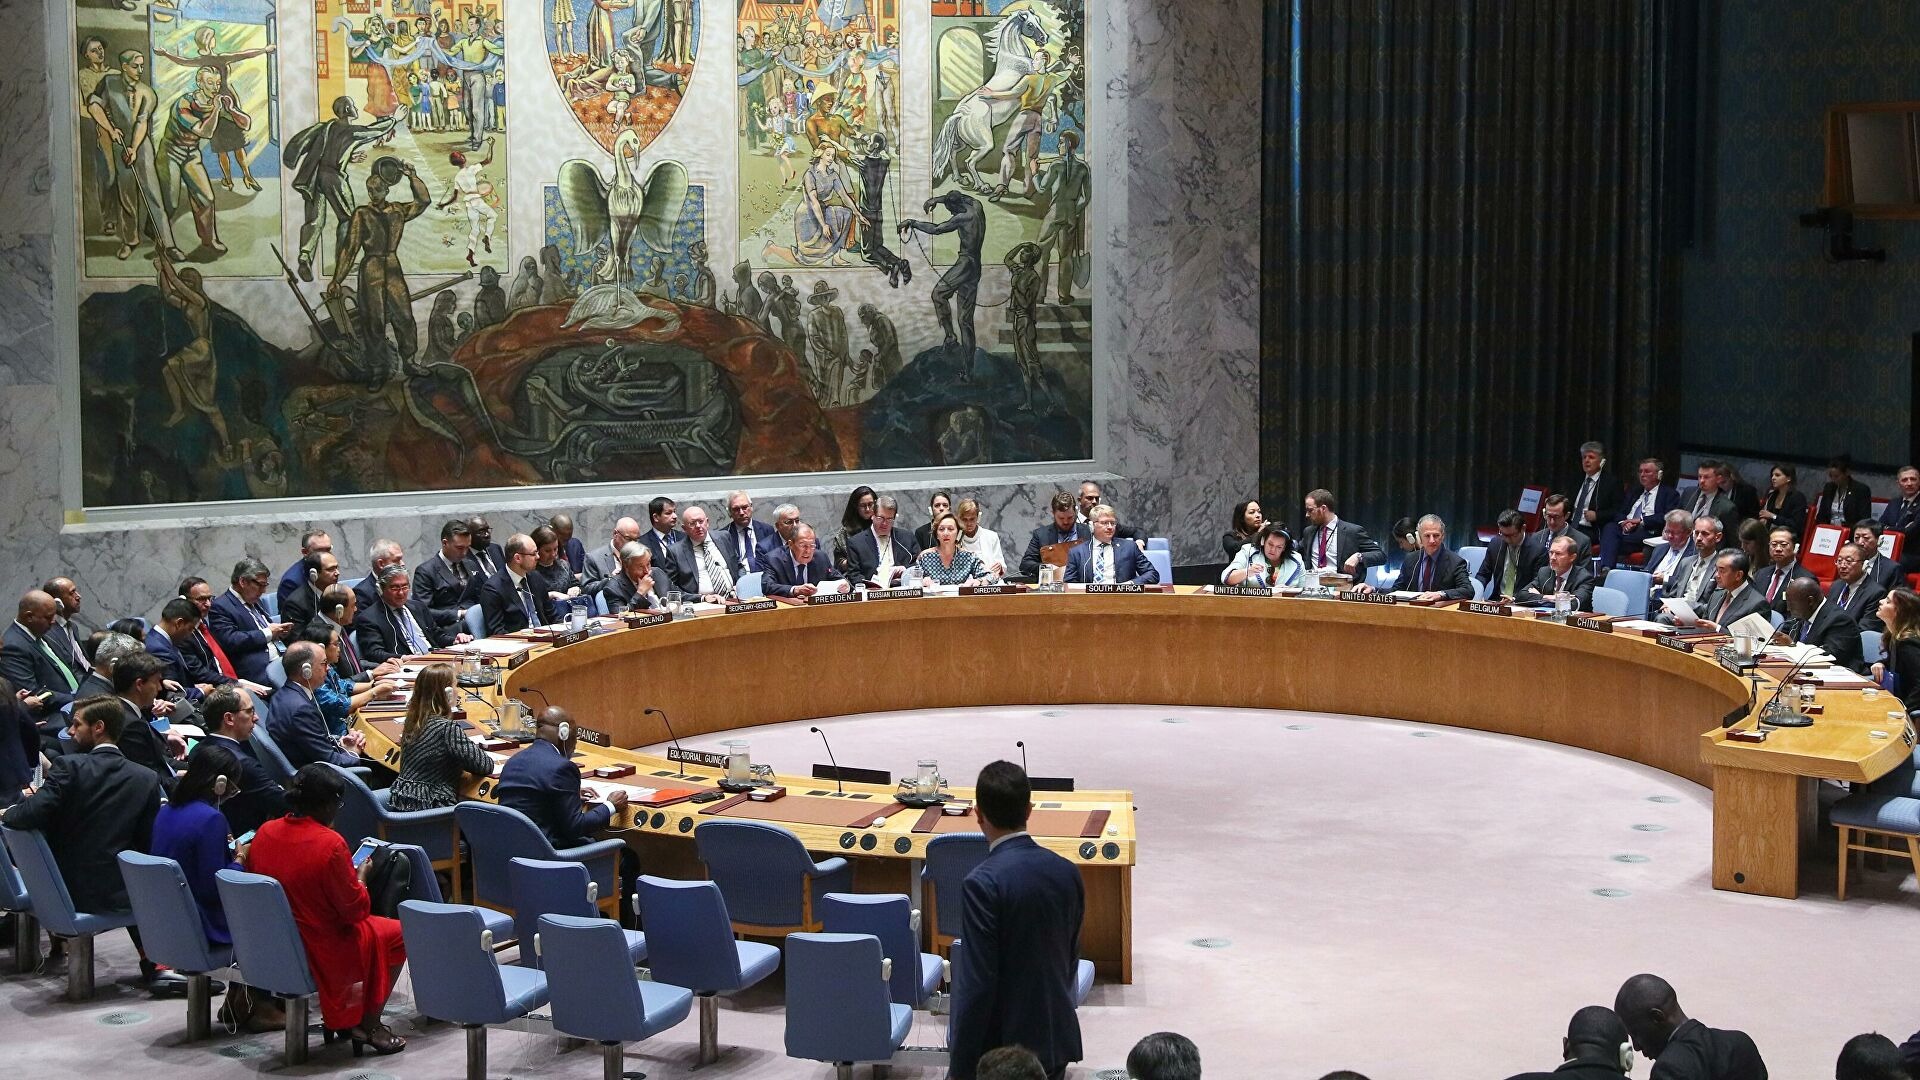 LIVE ? Россия собирает Совет Безопасности ООН * Нью-Йорк 11/03/22   @ТНВ 